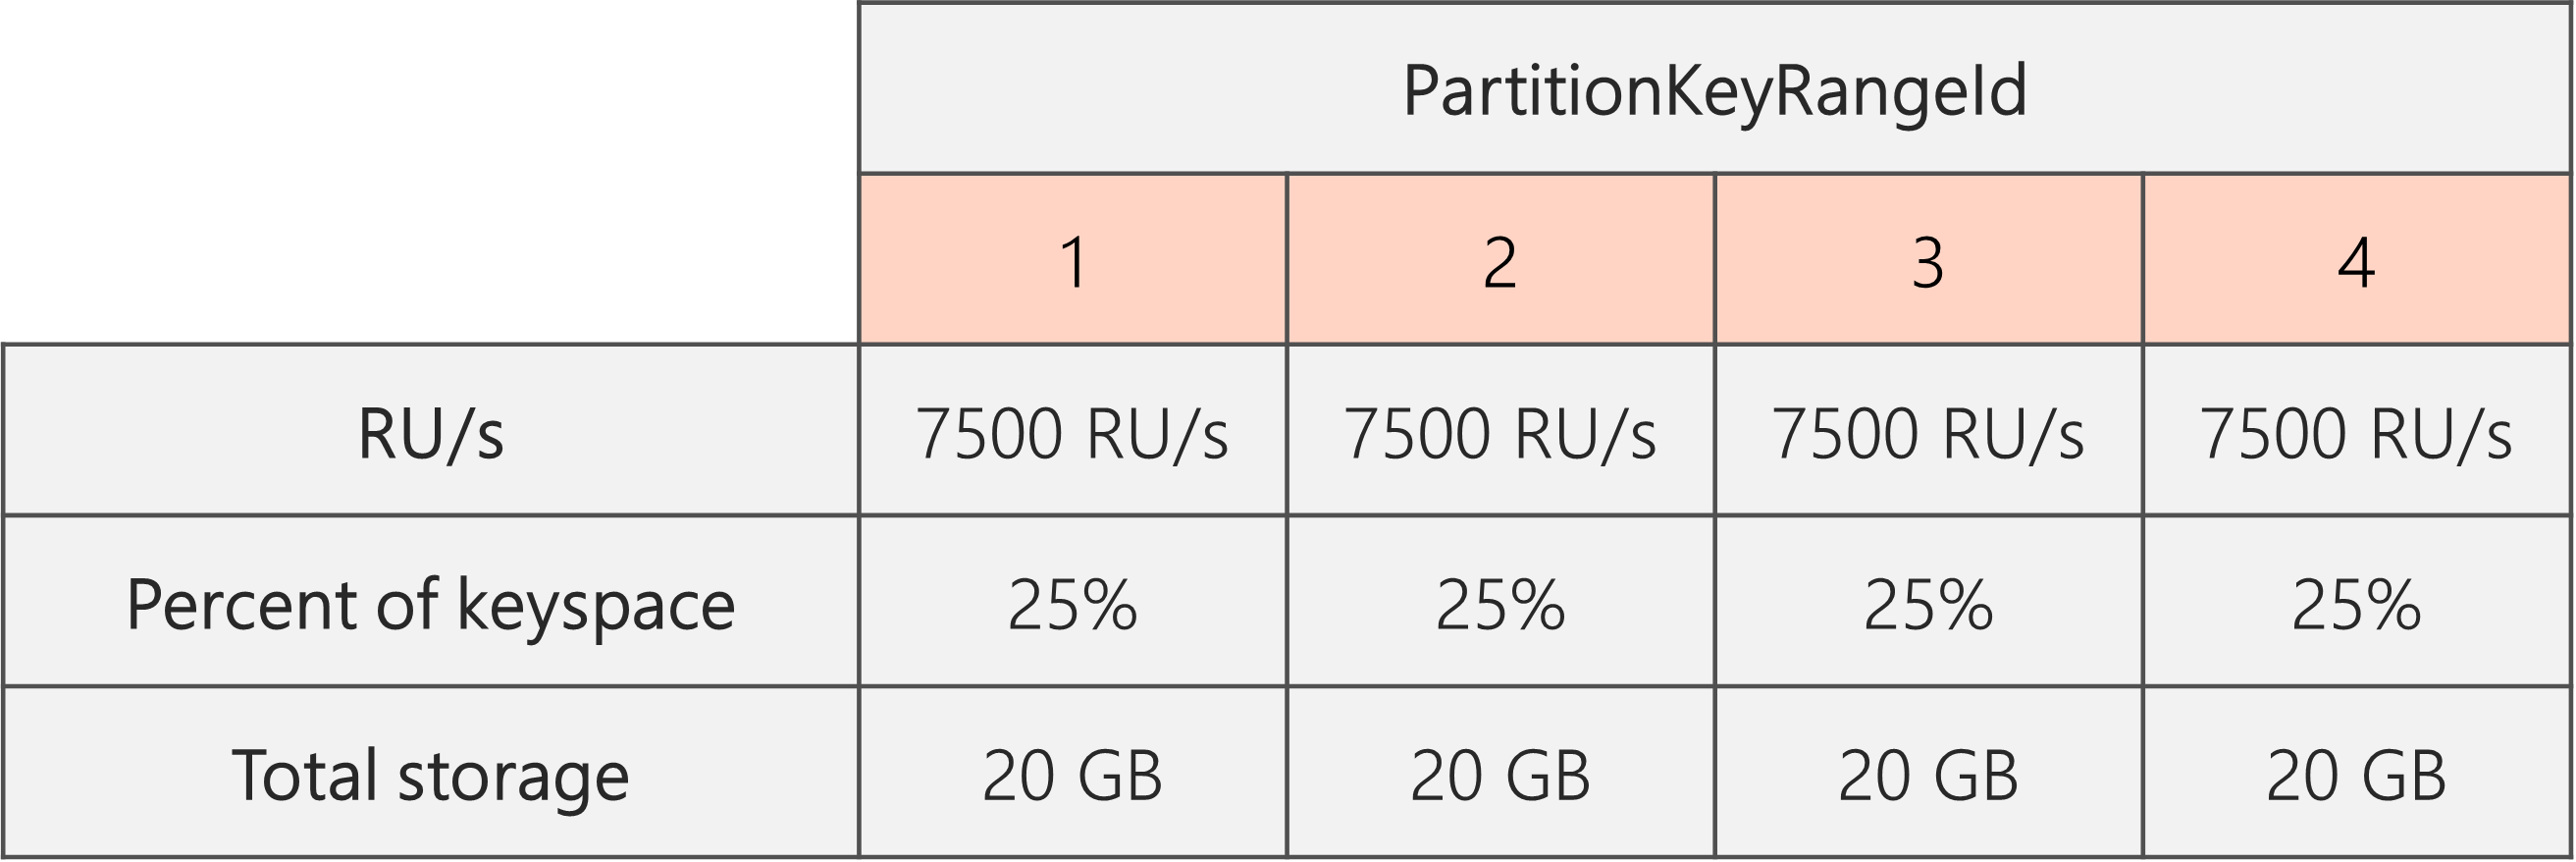 Miután a felosztás befejeződött, és az RU/s 40 000 RU/s-ról 30 000 RU/s-ra csökkent, 4 PartitionKeyRangeId található, amelyek mindegyike 7500 RU/s-val és a teljes kulcstér 25%-ával (20 GB) rendelkezik.